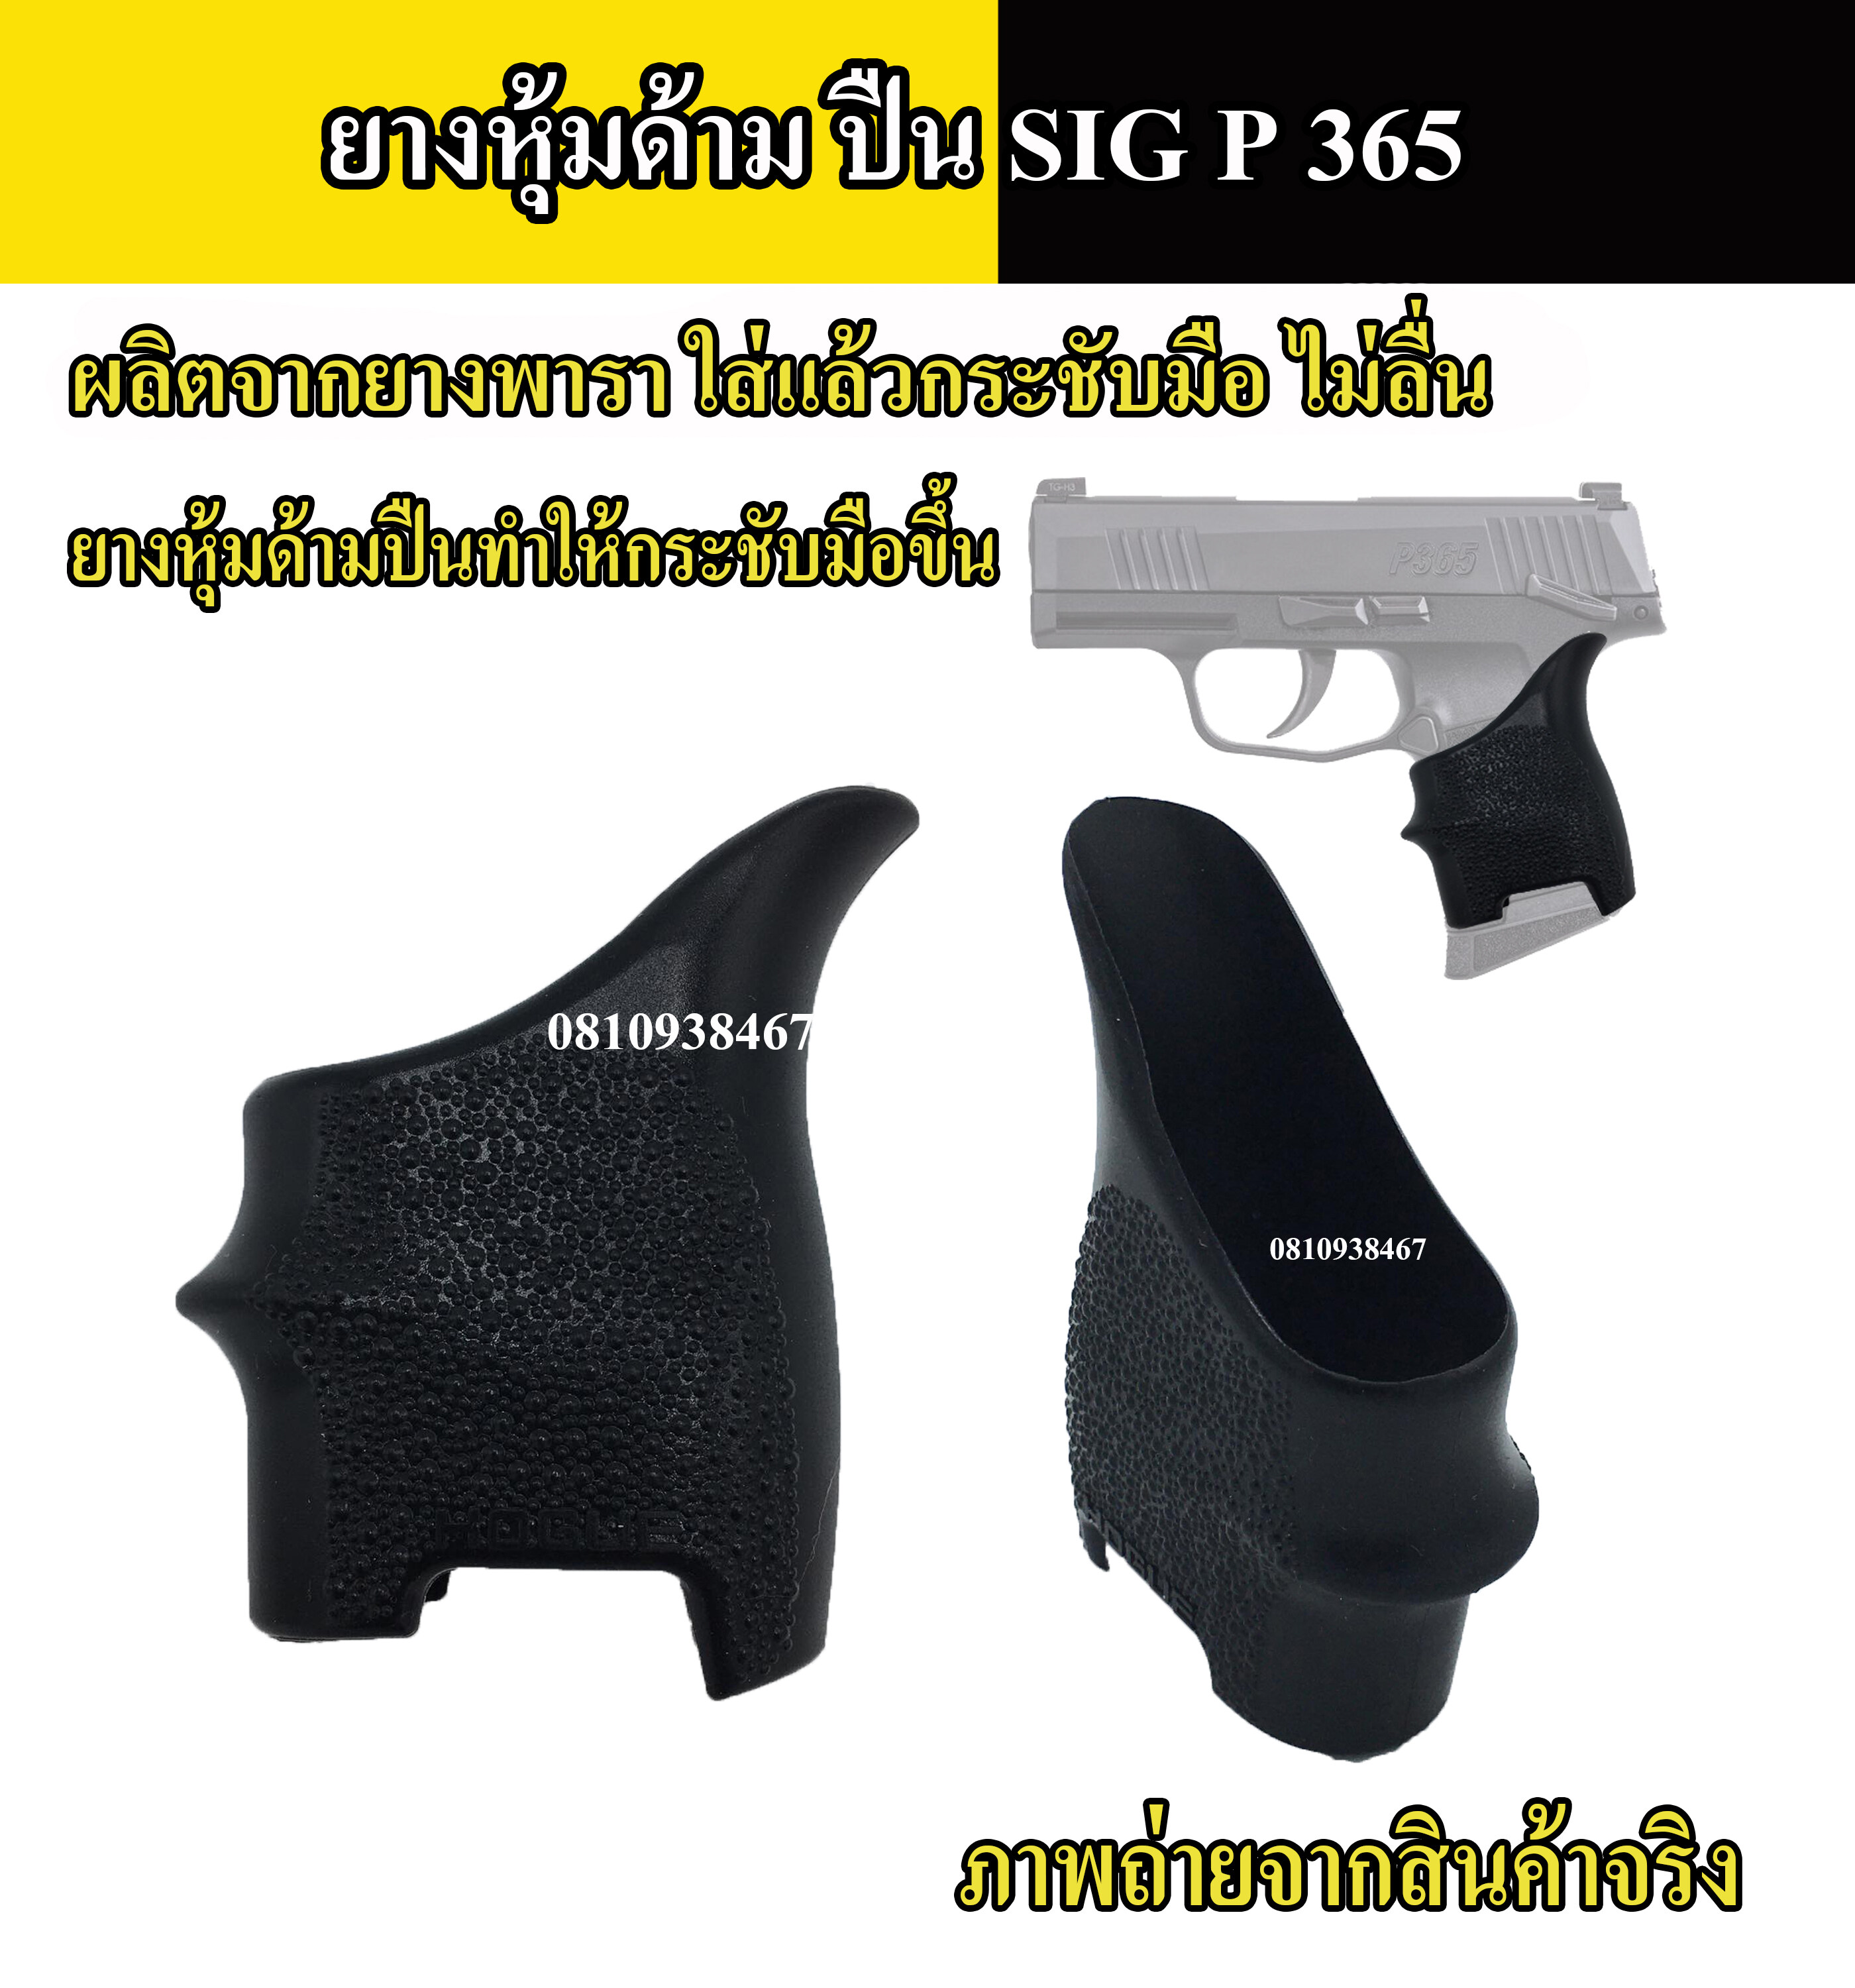 ยางหุ้มด้ามปืน SIG P365 กันลื่น สีดำ  Grips ปืนสั้นรุ่นสำหรับ ปืนสั้น SIG P 365  tactical grip glove gloc